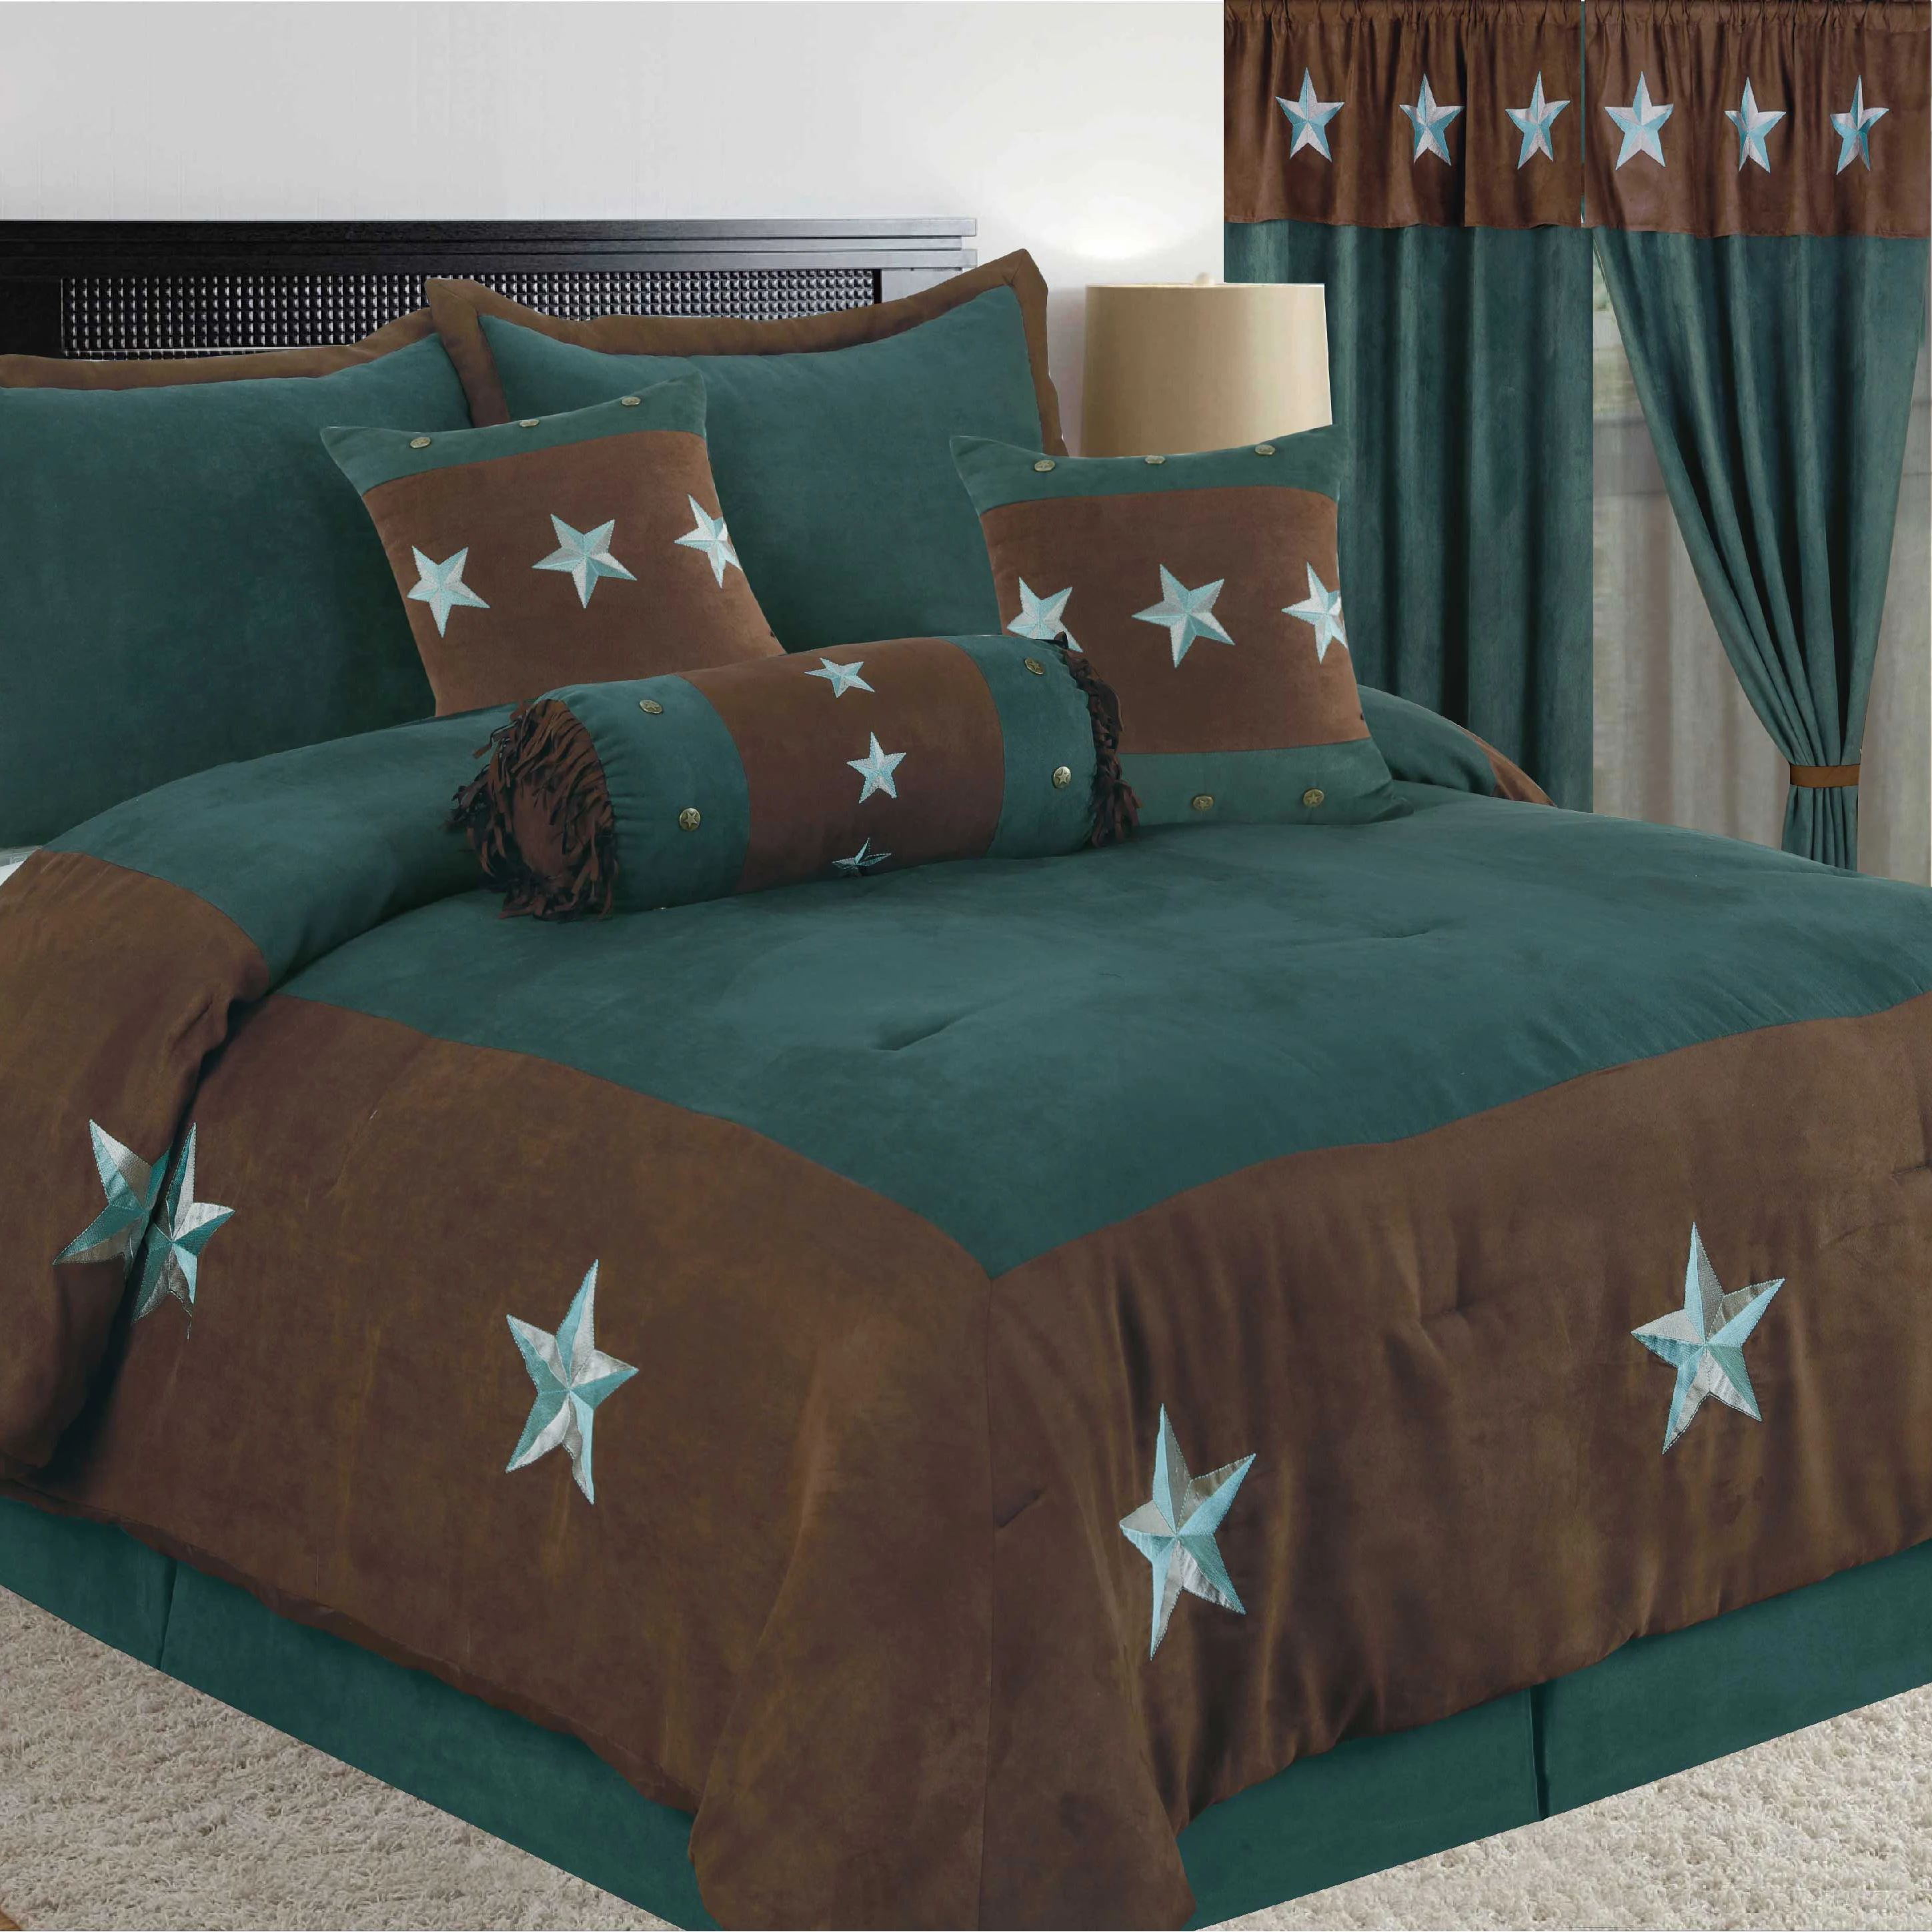 Новый Дизайн Роскошный со звездами в западном стиле из искусственной замши 7 шт. для кровати King/постельных принадлежностей двухспального размера набор стеганых одеял